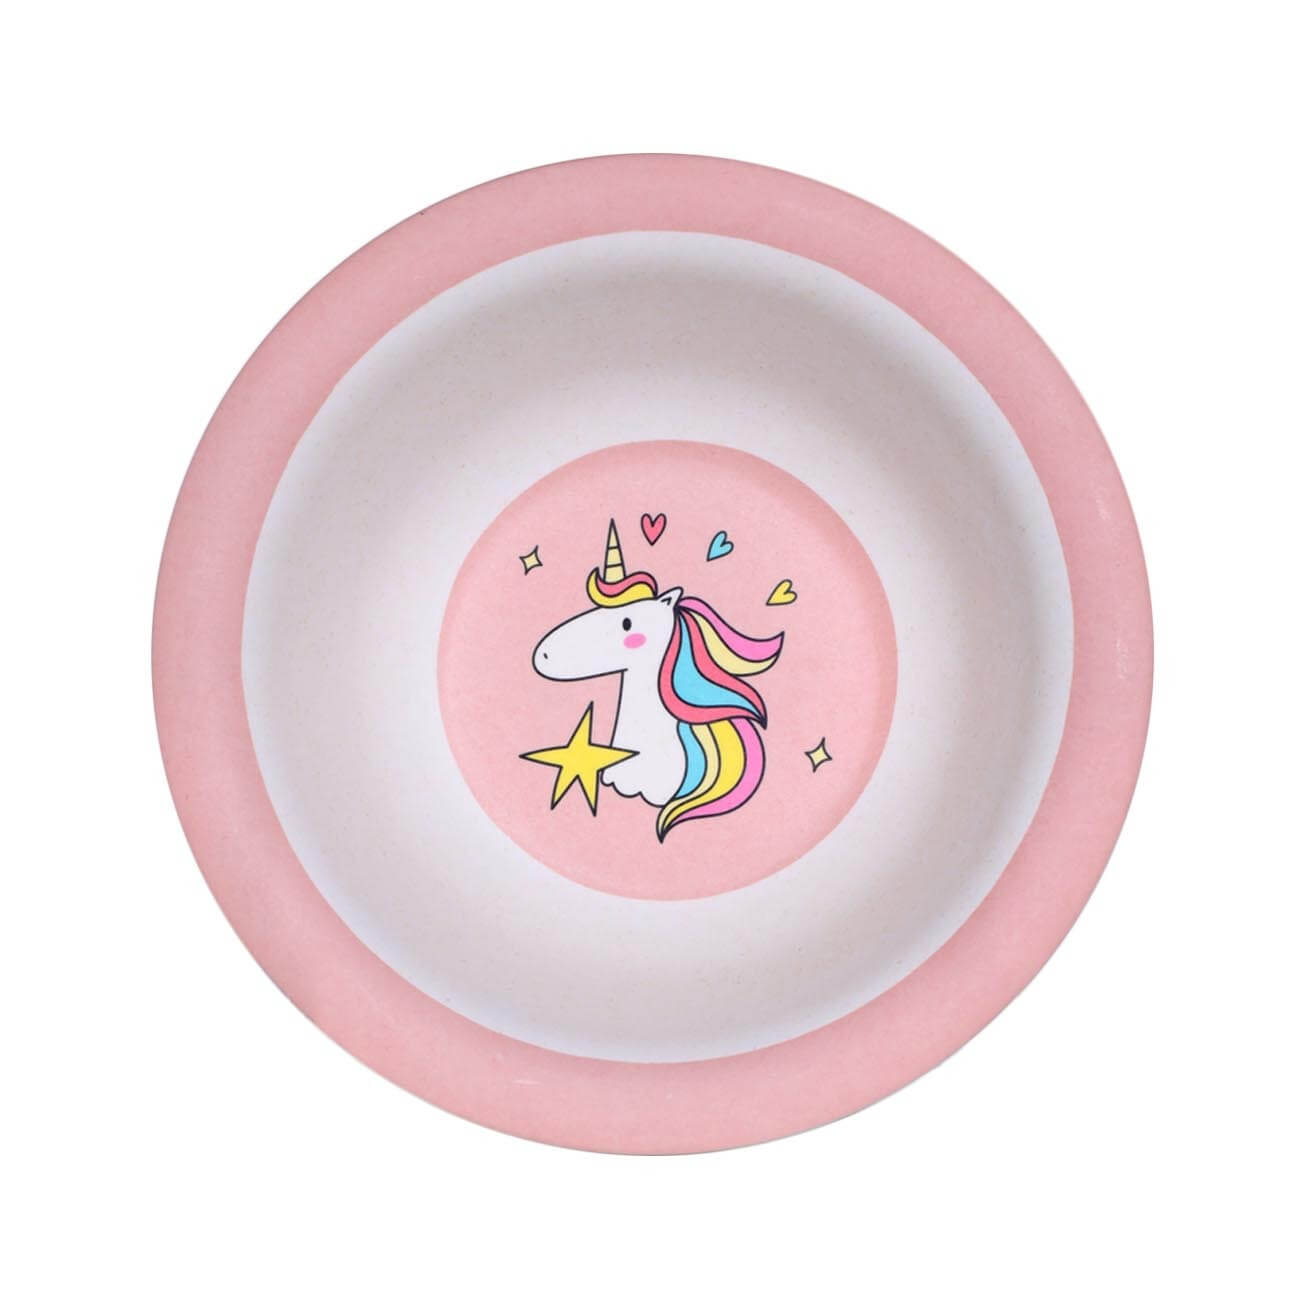 Тарелка суповая, детская, 15х4 см, бамбук, розовая, Единорог, Unicorn тарелка суповая детская 15 см бамбук розово мятная единорог и звезды unicorn